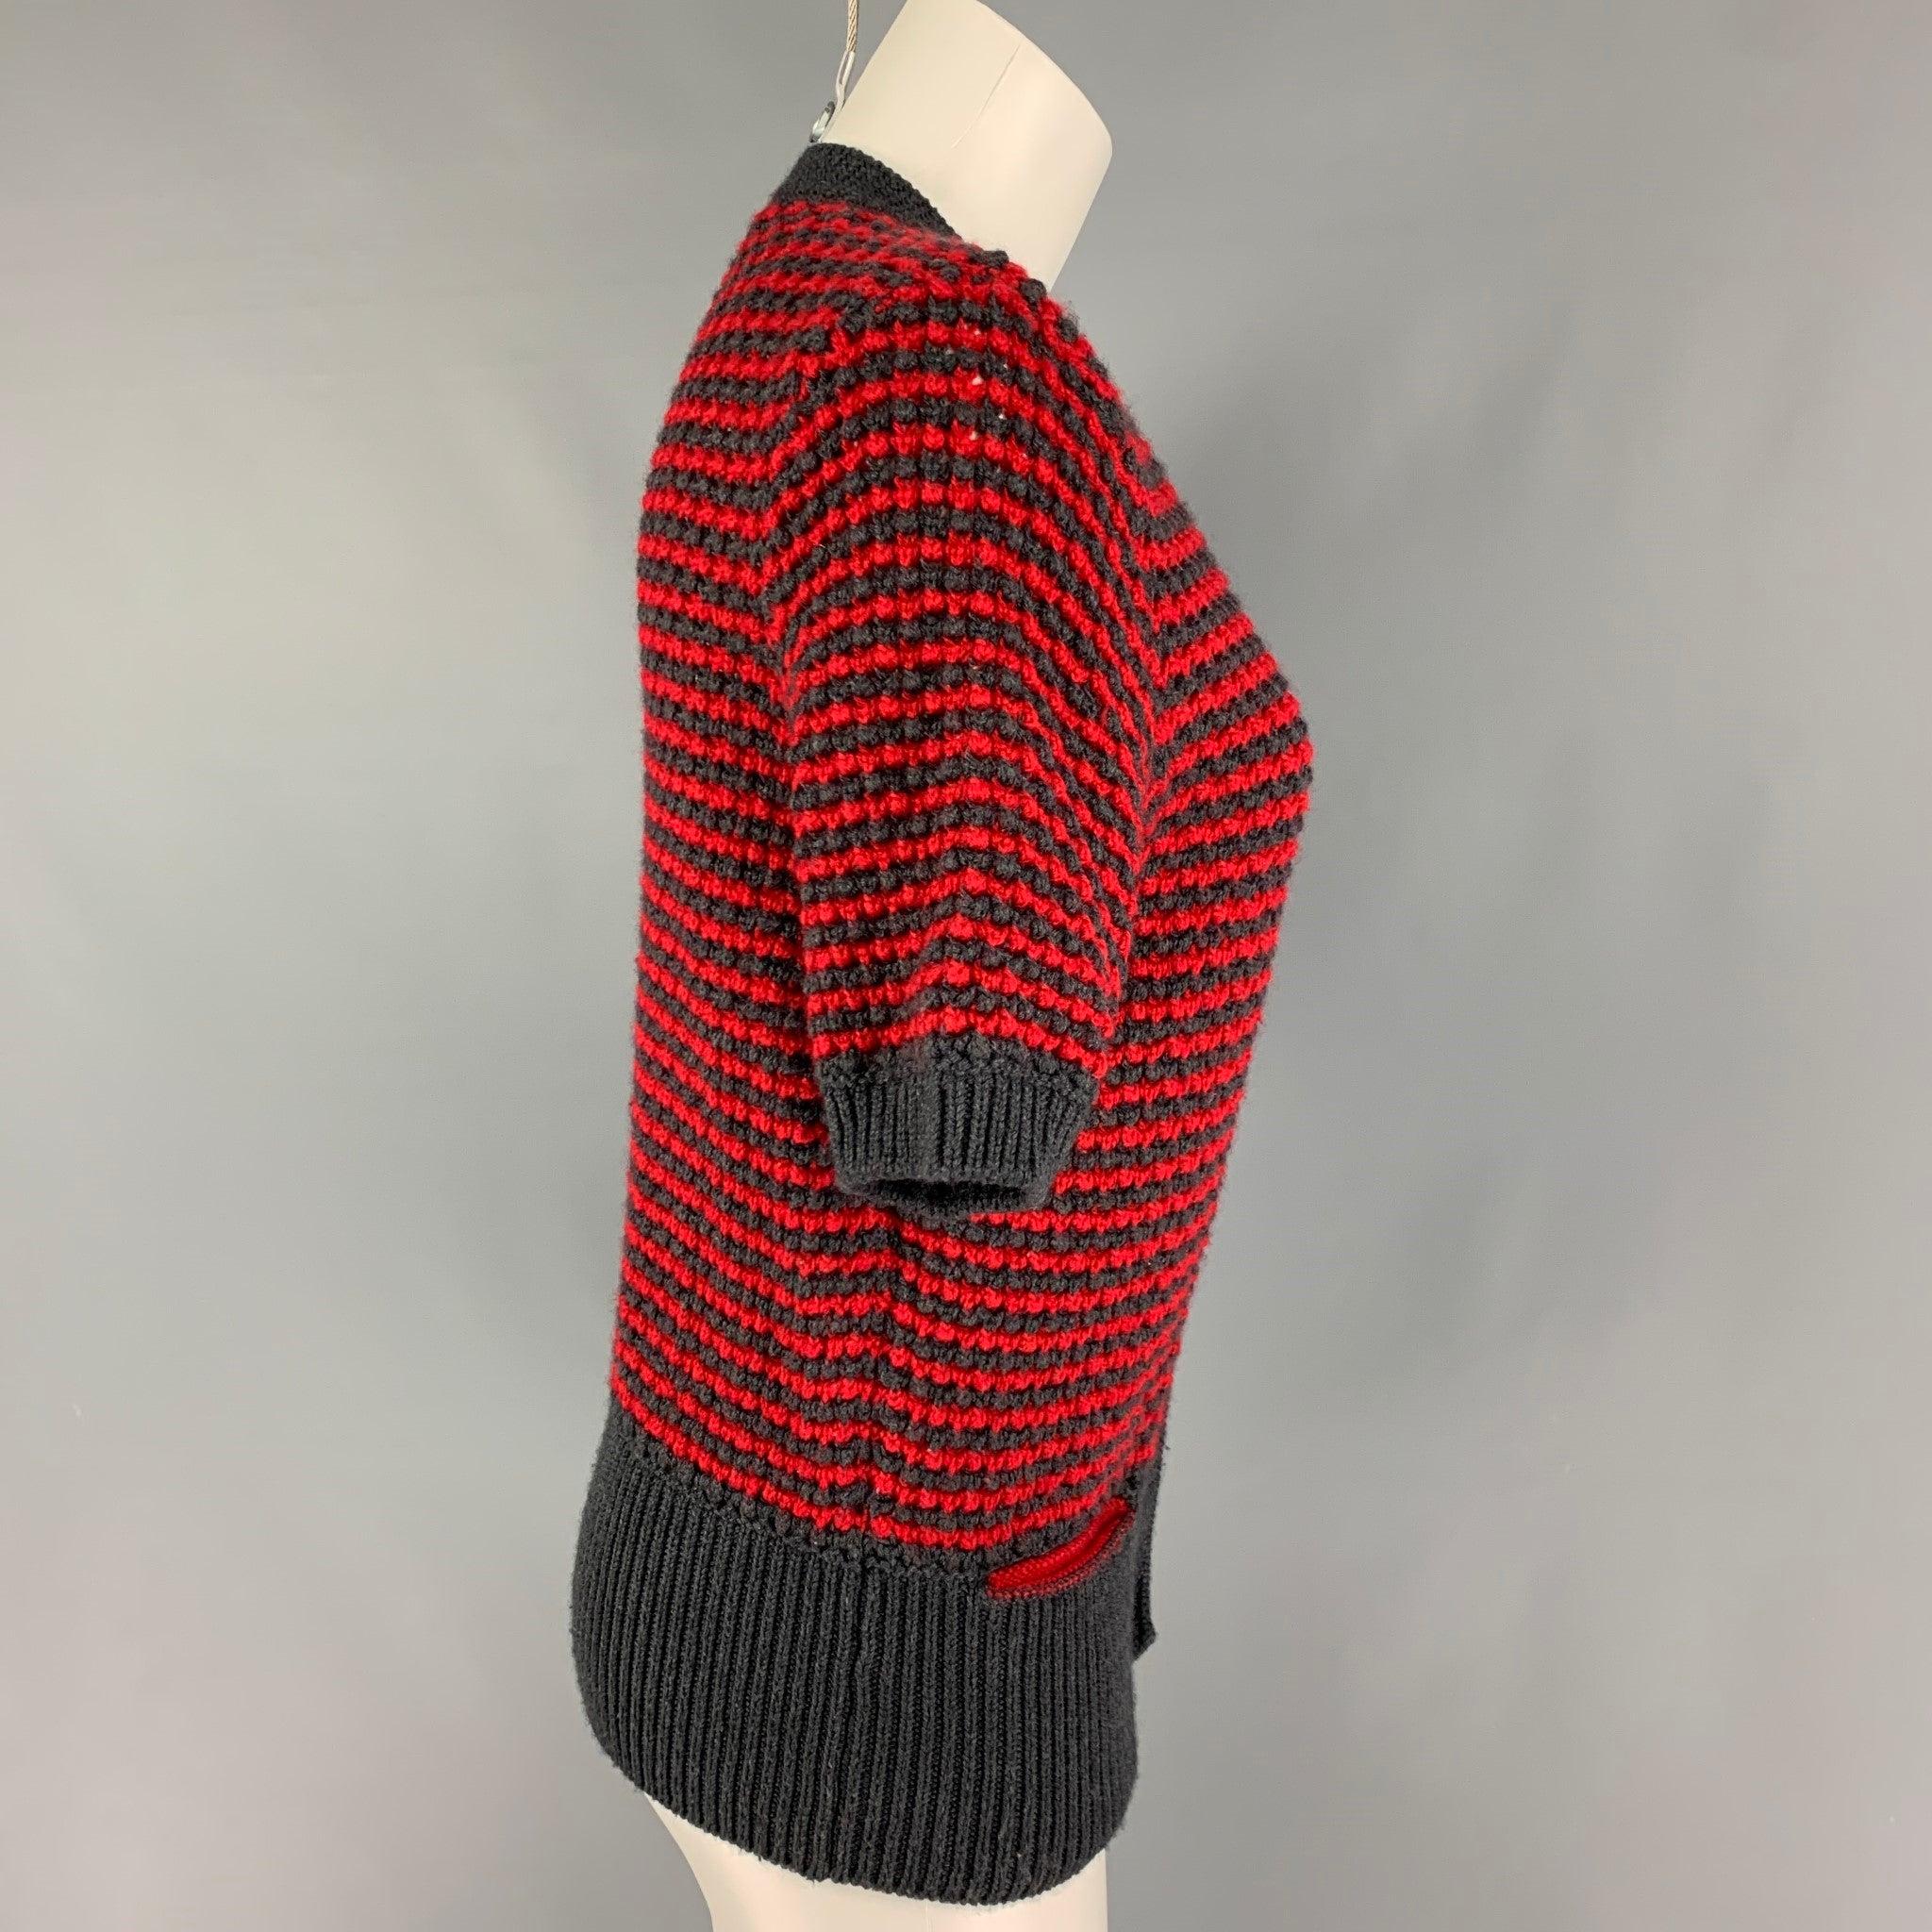 Le cardigan SEE by CHLOE se présente sous la forme d'un tricot en laine/acrylique gris et rouge, avec une fermeture boutonnée. Fabriquées en Italie.
Très bien
Etat d'occasion. 

Marqué :   8 

Mesures : 
 
Épaule : 15.5 pouces  Poitrine : 36 pouces 